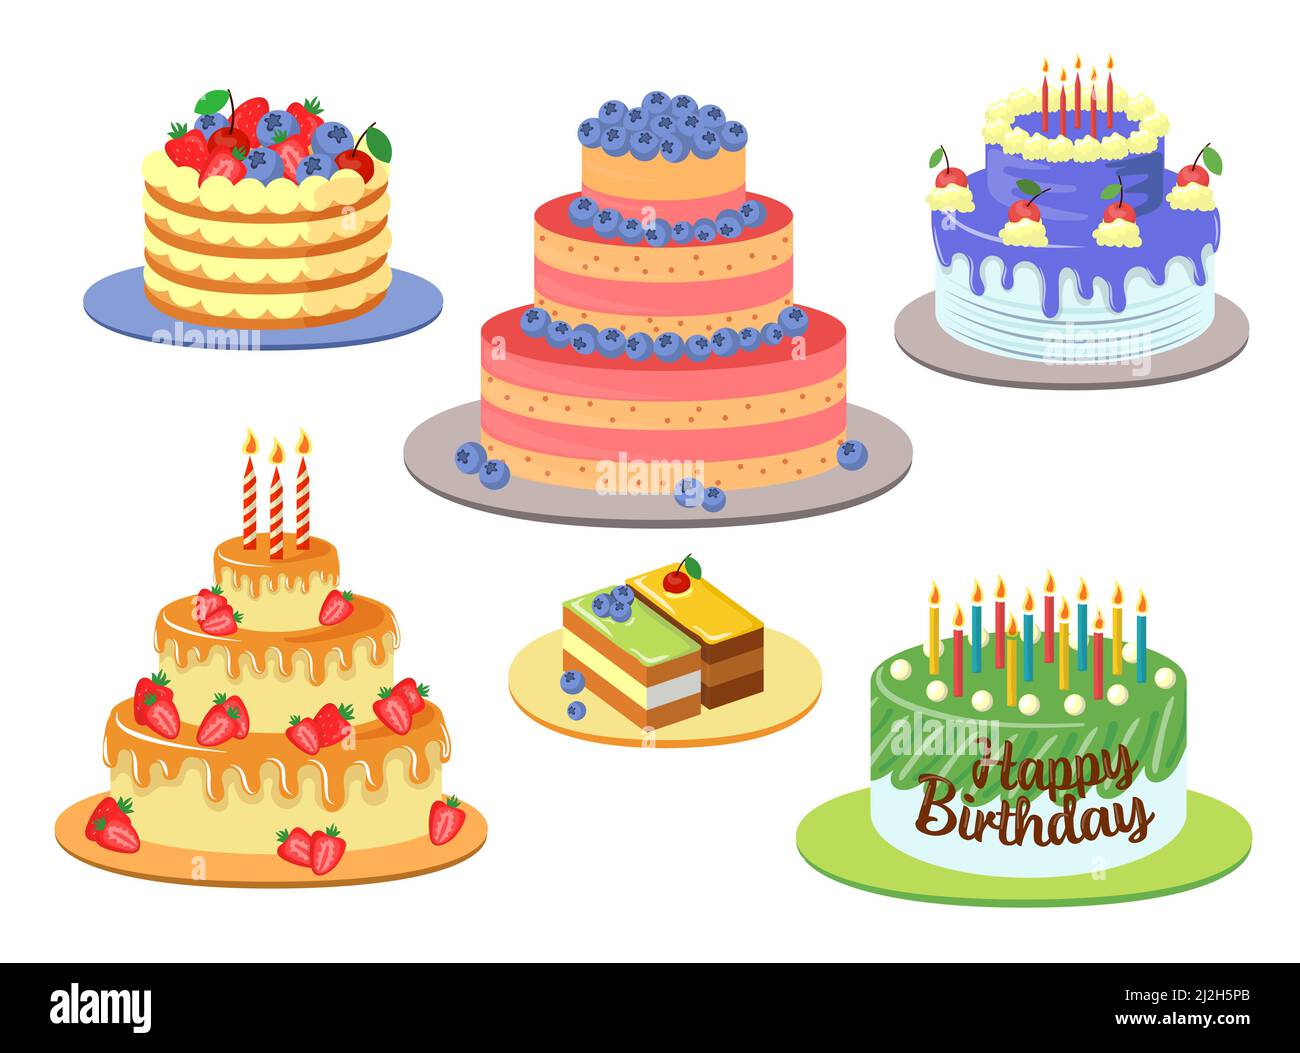 Ensemble d'illustrations vectorielles de gâteaux d'anniversaire différents et élégants.Motifs de gâteaux au chocolat avec décor, glaçage, cerises et bougies isolées sur fond blanc Illustration de Vecteur